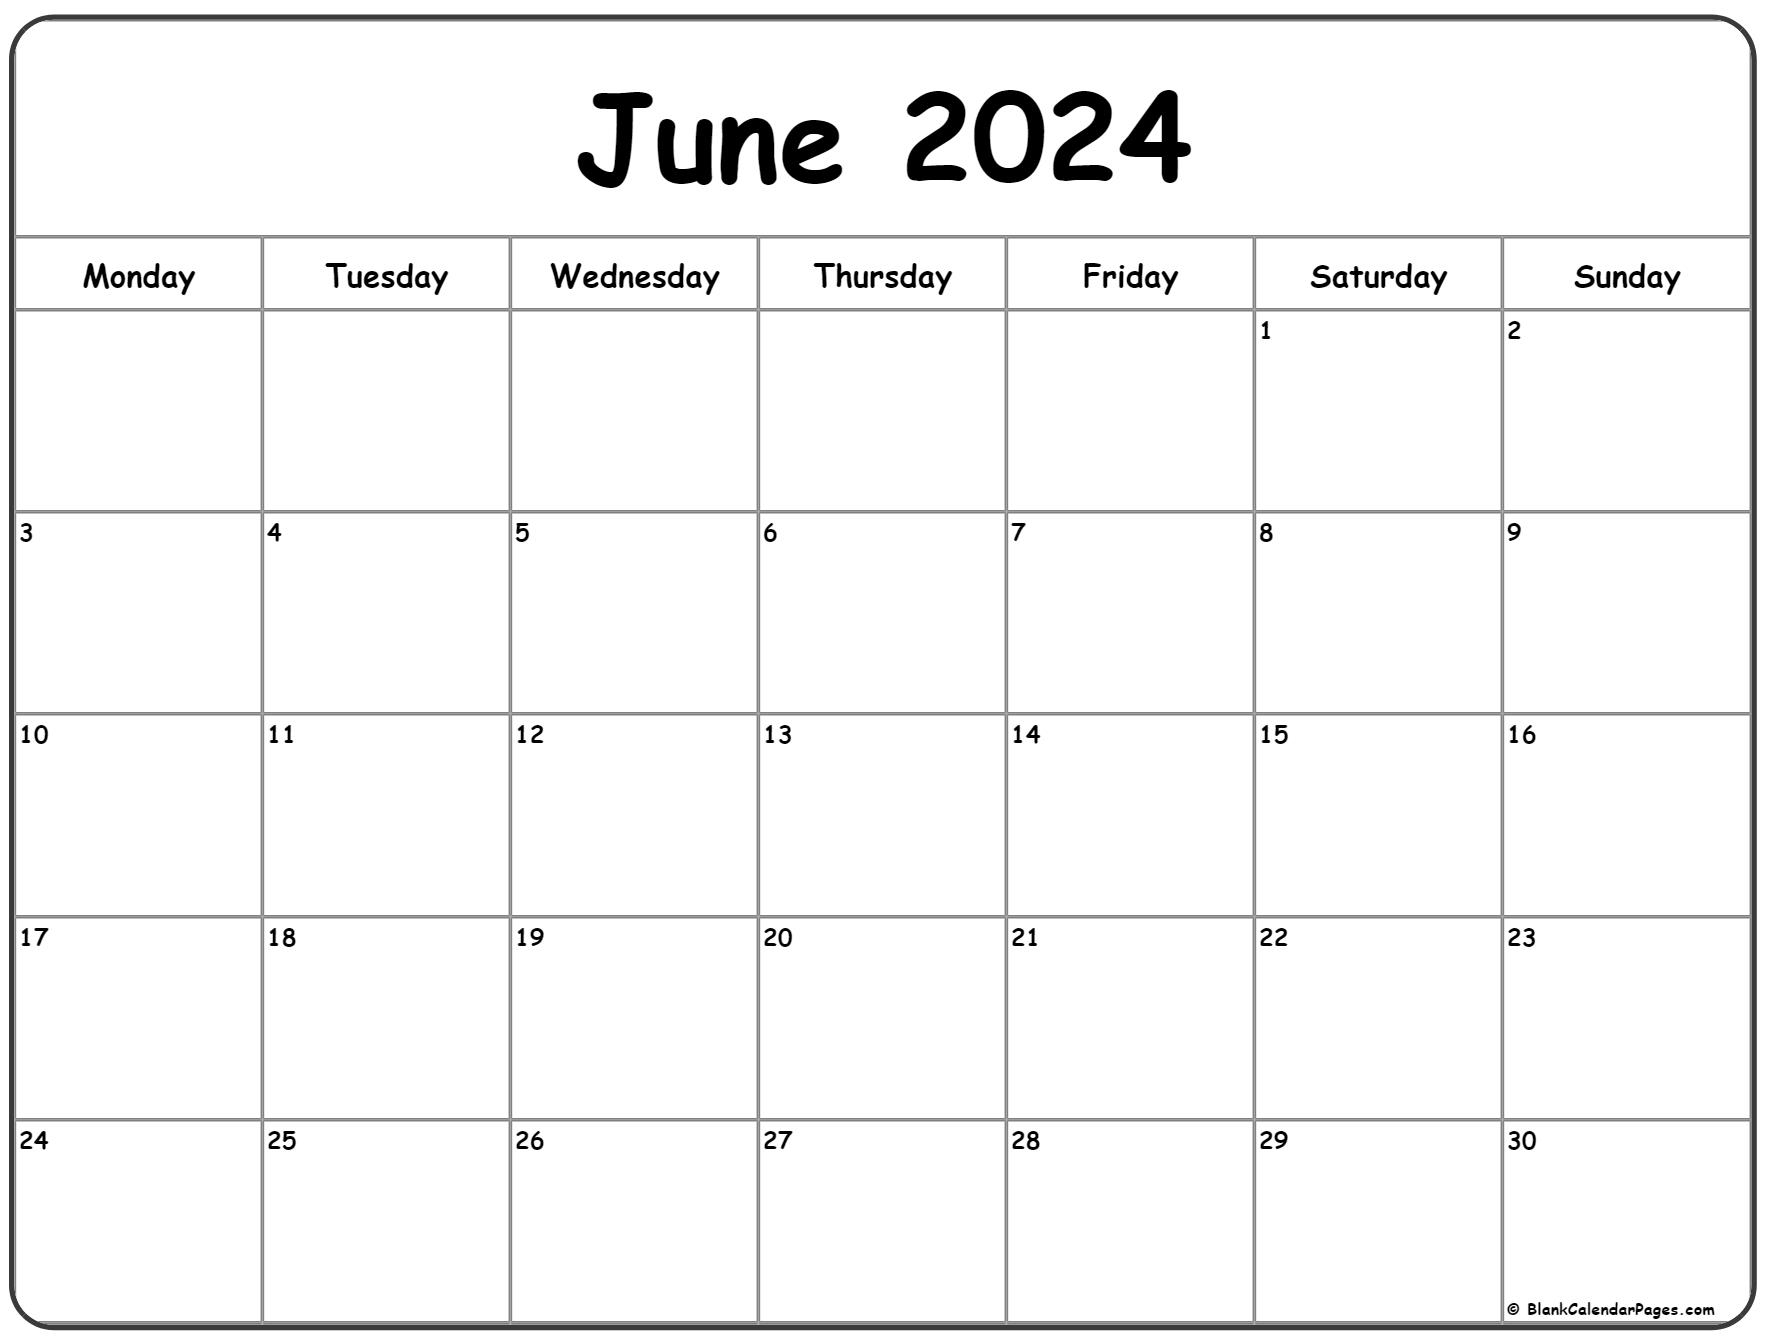 June 2022 Regents Schedule June 2022 Monday Calendar | Monday To Sunday